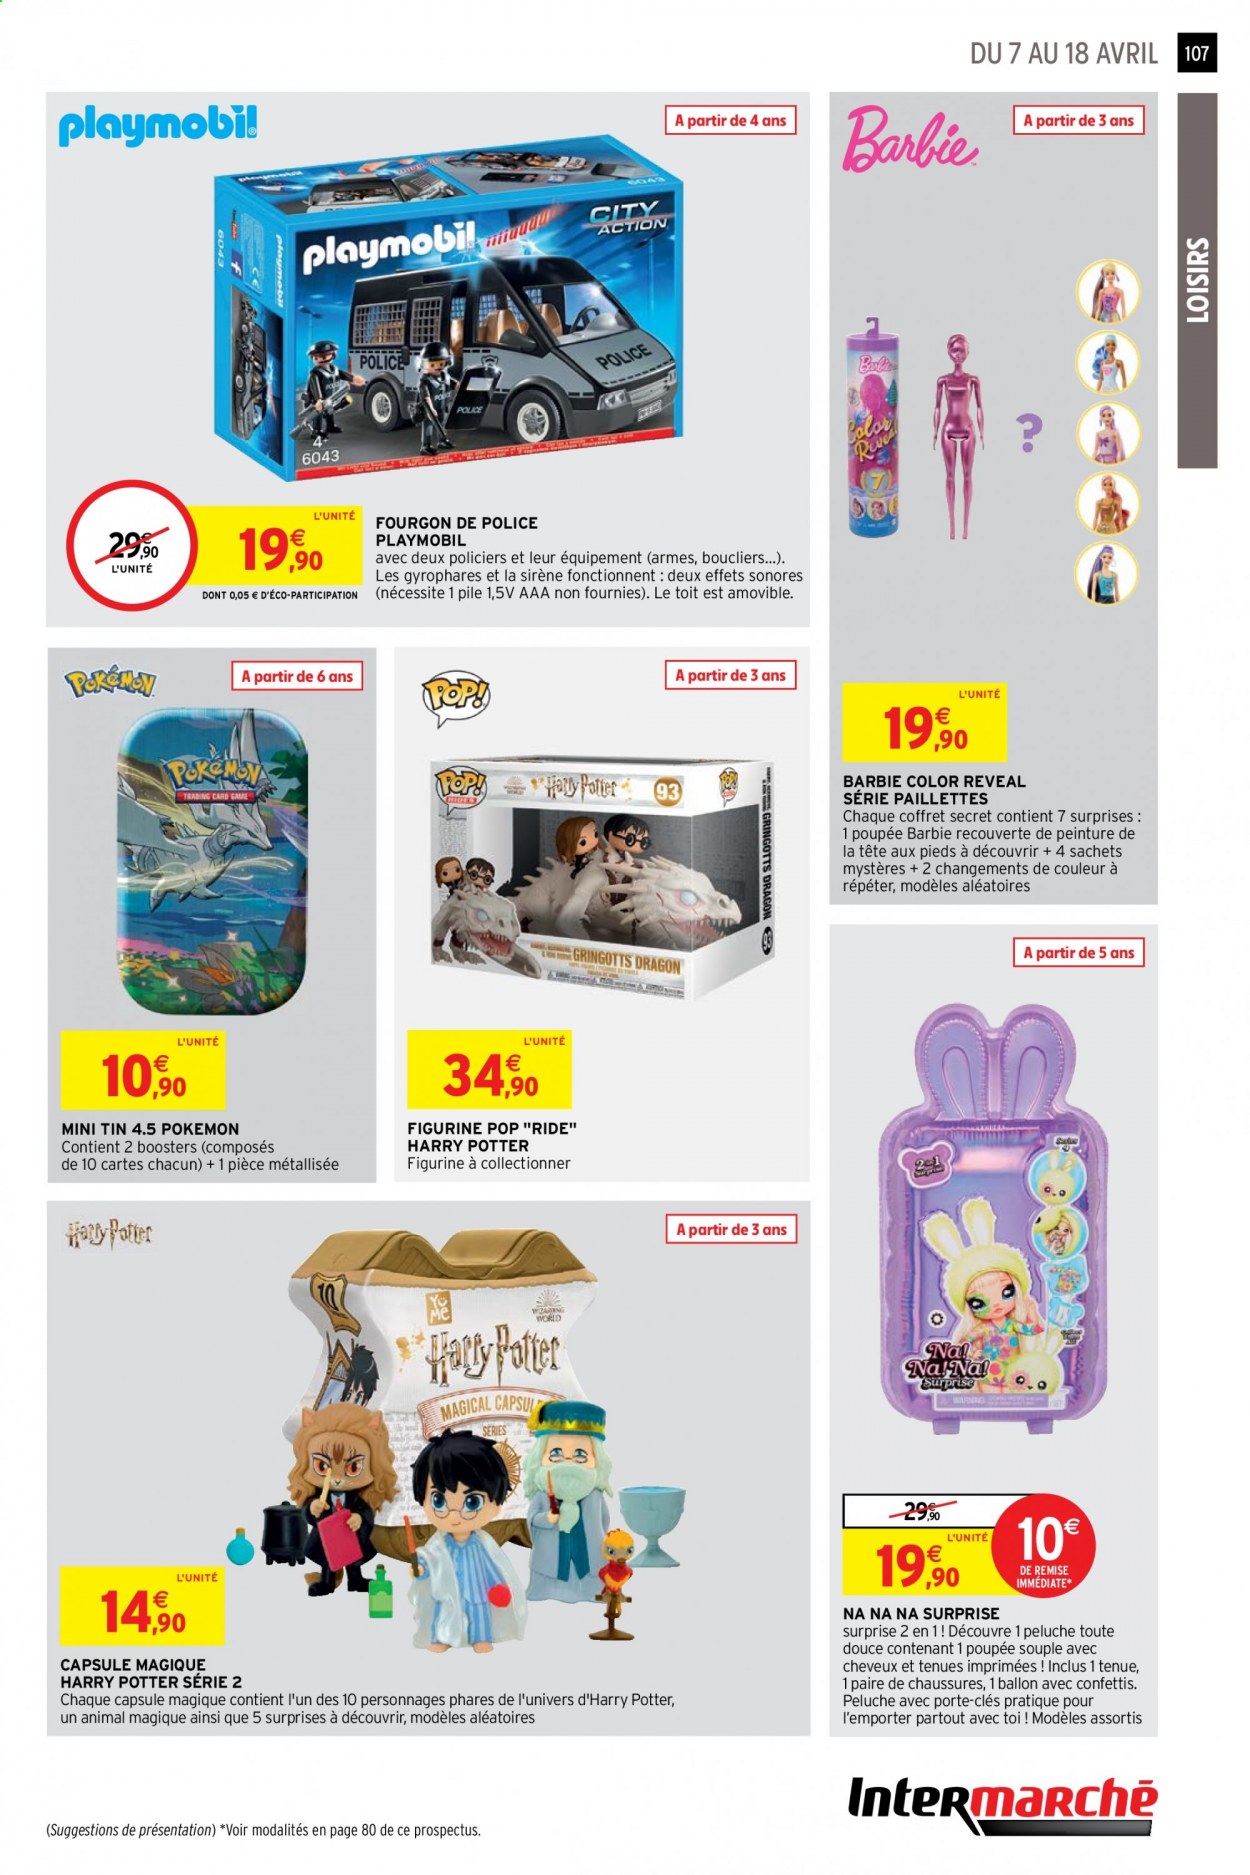 thumbnail - Catalogue Intermarché Hyper - 07/04/2021 - 18/04/2021 - Produits soldés - Harry Potter, Pokémon, Barbie, figurine, coffret, porte-clés, ballon, poupée, Playmobil, peluche. Page 107.